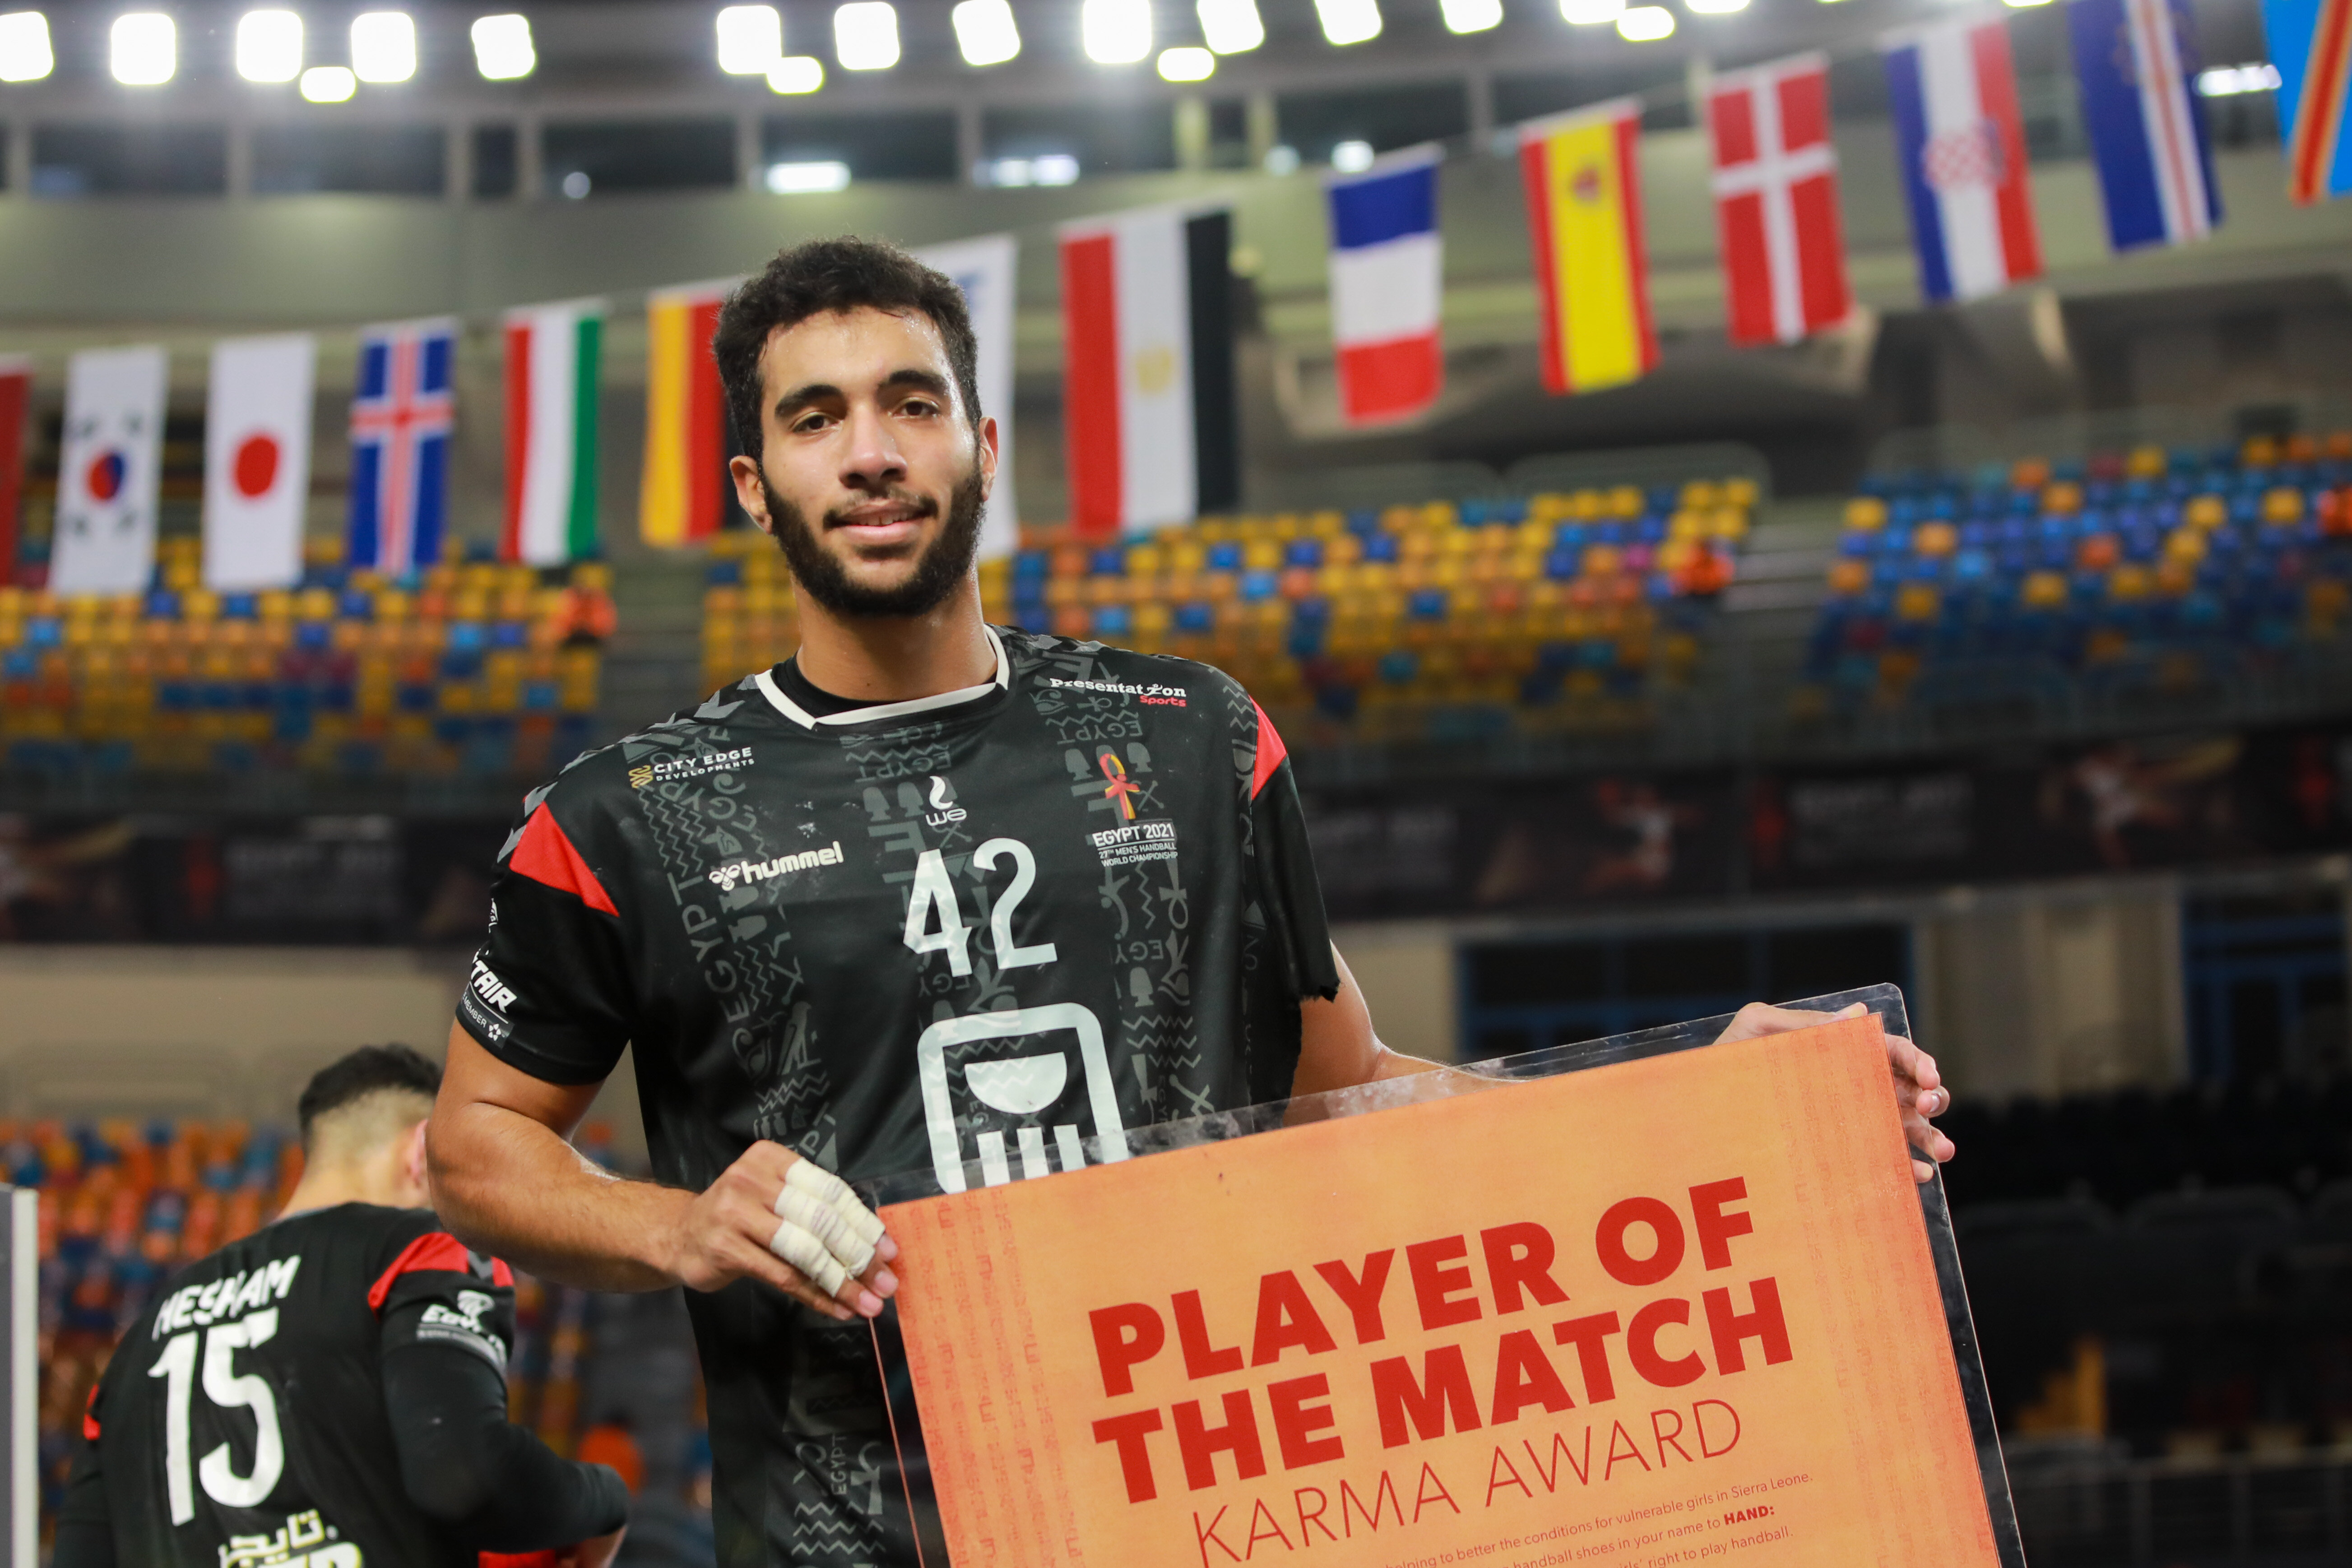 Hassan Kaddah, player of the match - Handball-base.com